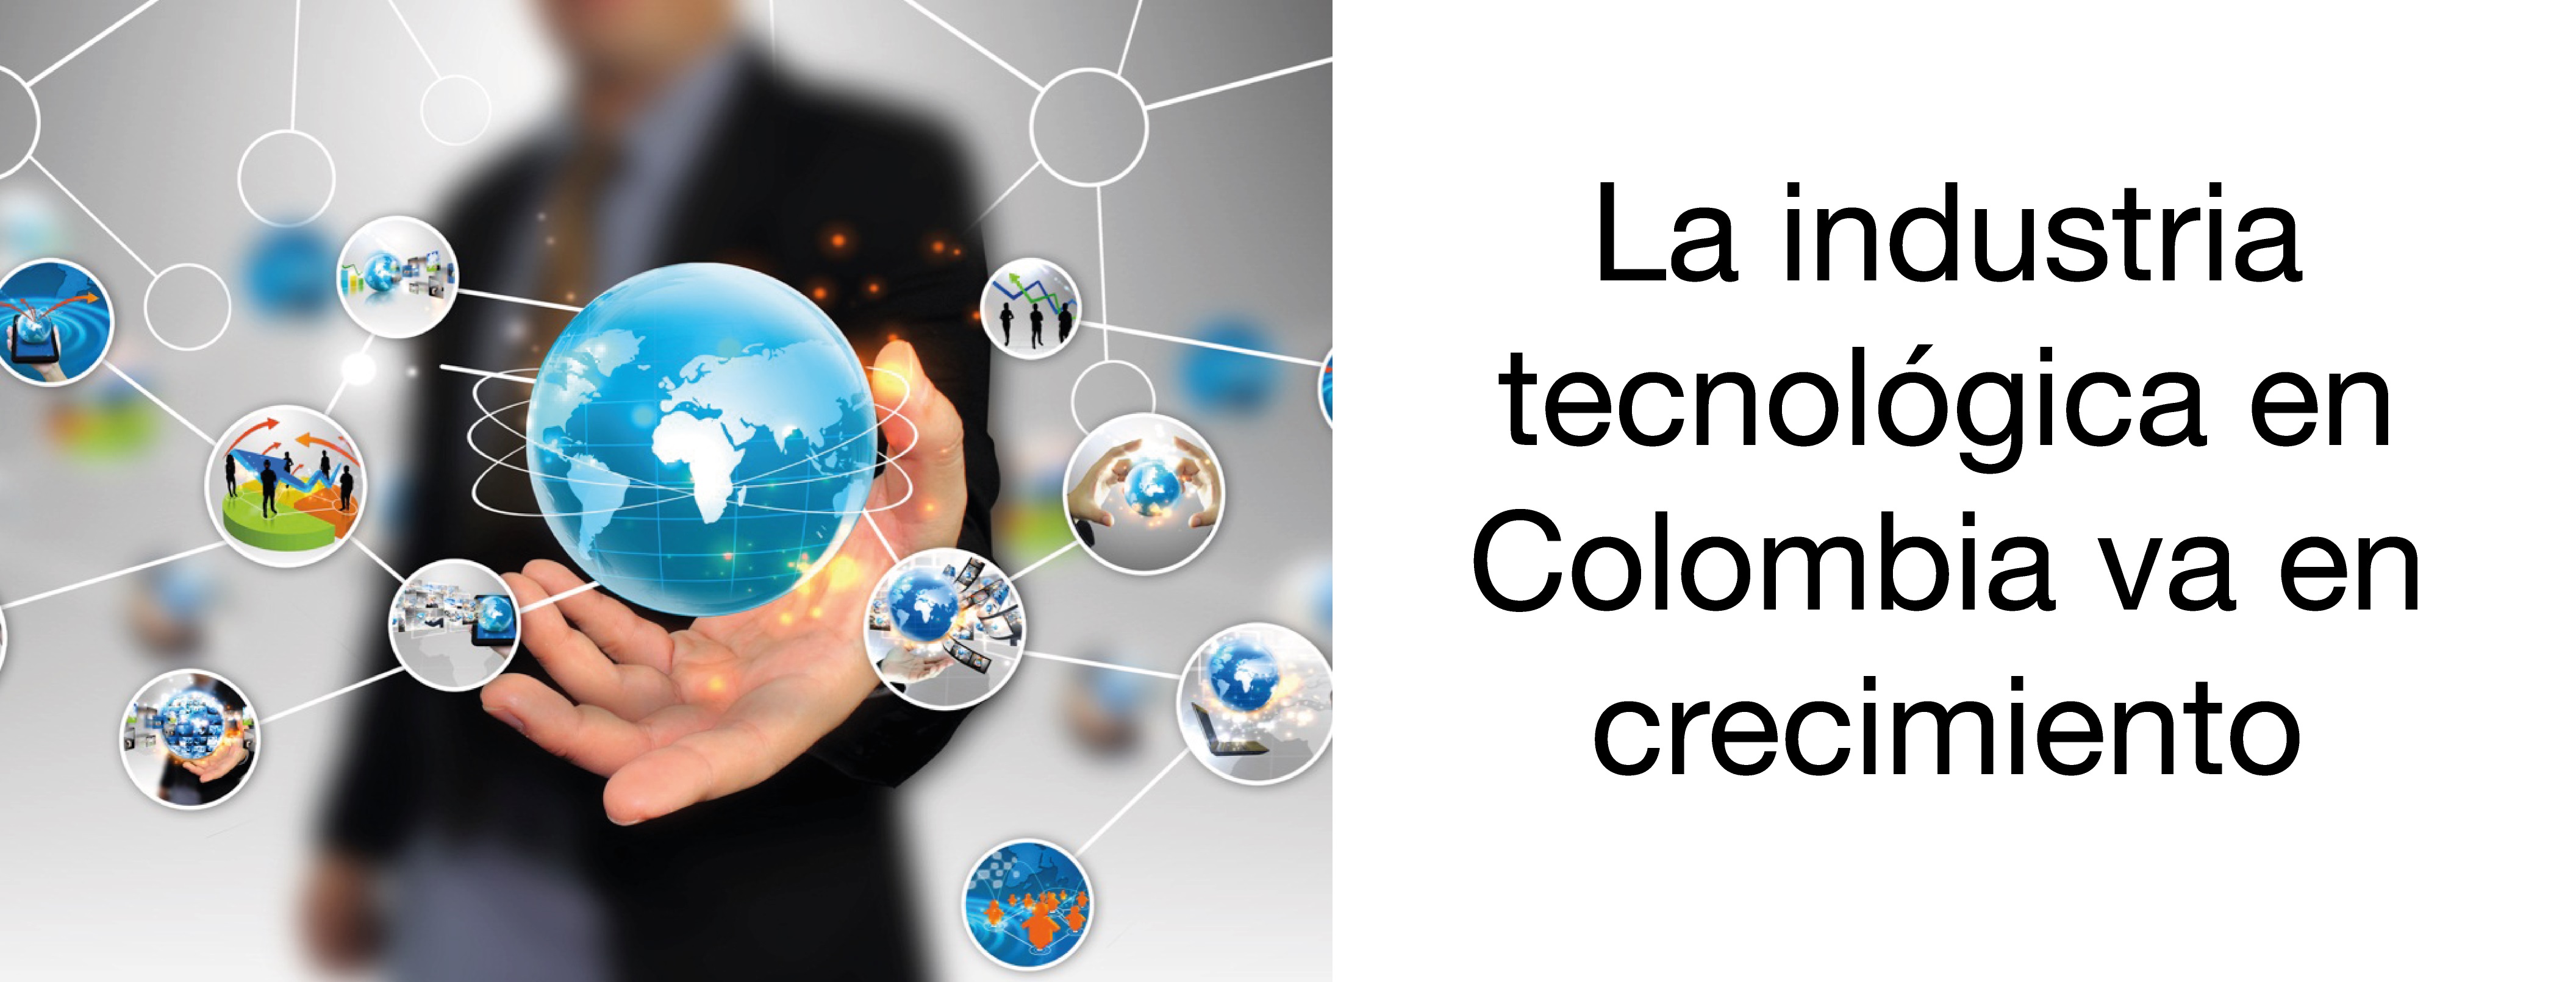 La-industria-tecnológica-en-Colombia-va-en-crecimiento